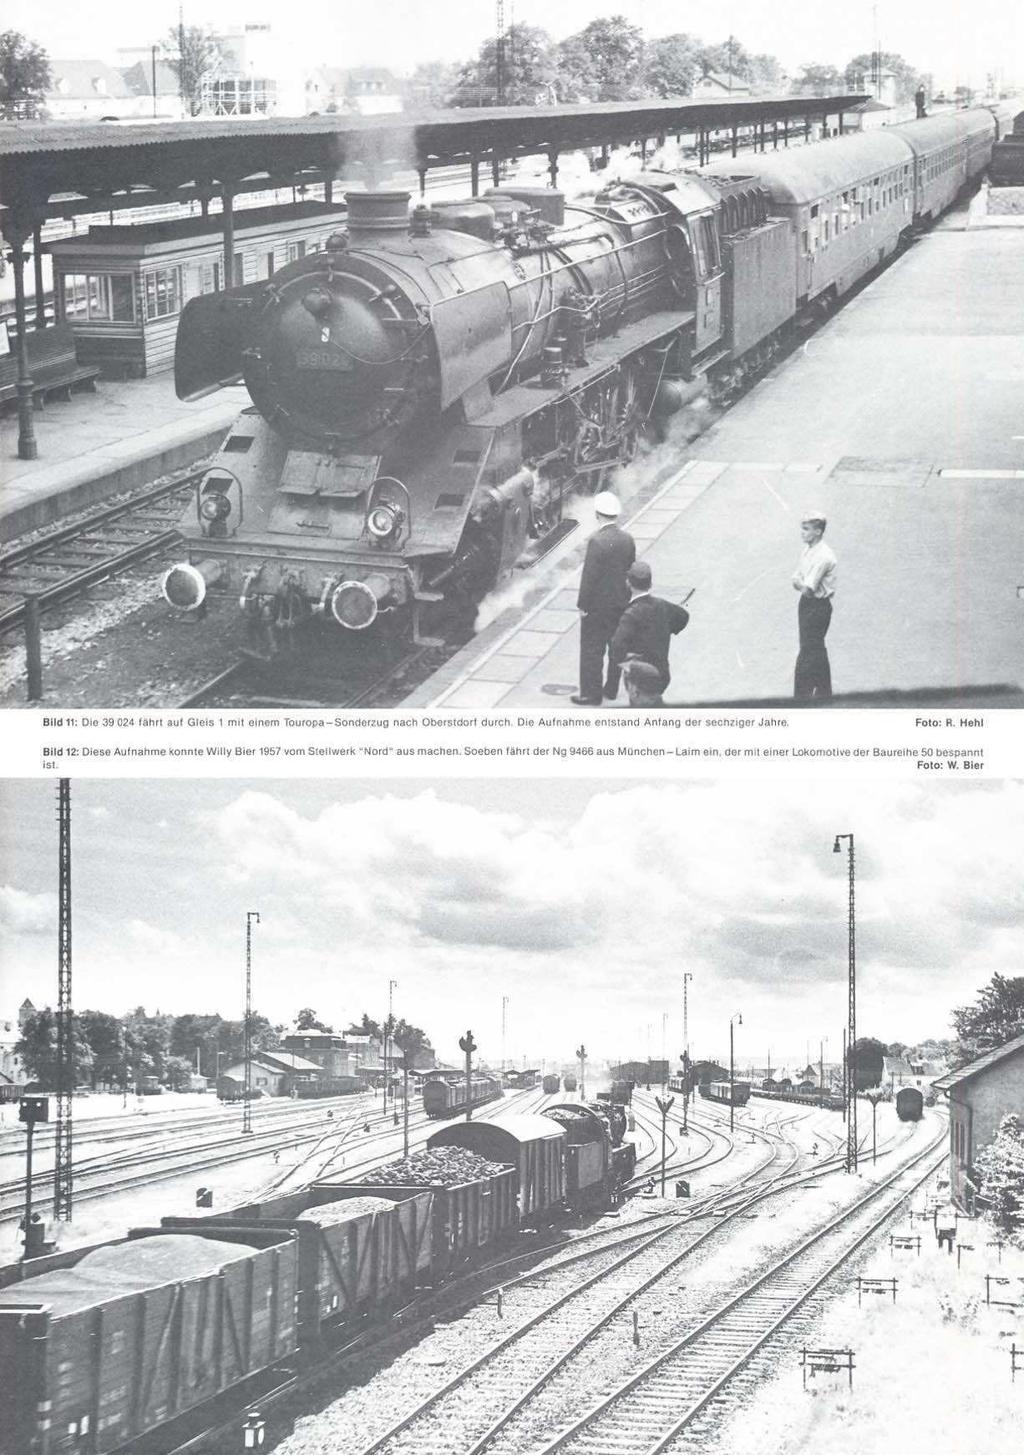 Bild 11: Dte 39 024 fahrt auf Gleis 1 mit Einem Touropa-Sonderzug nach Oberstdar - f durch. Die Aufnahme entstand Anfang der sechziger Jahre.